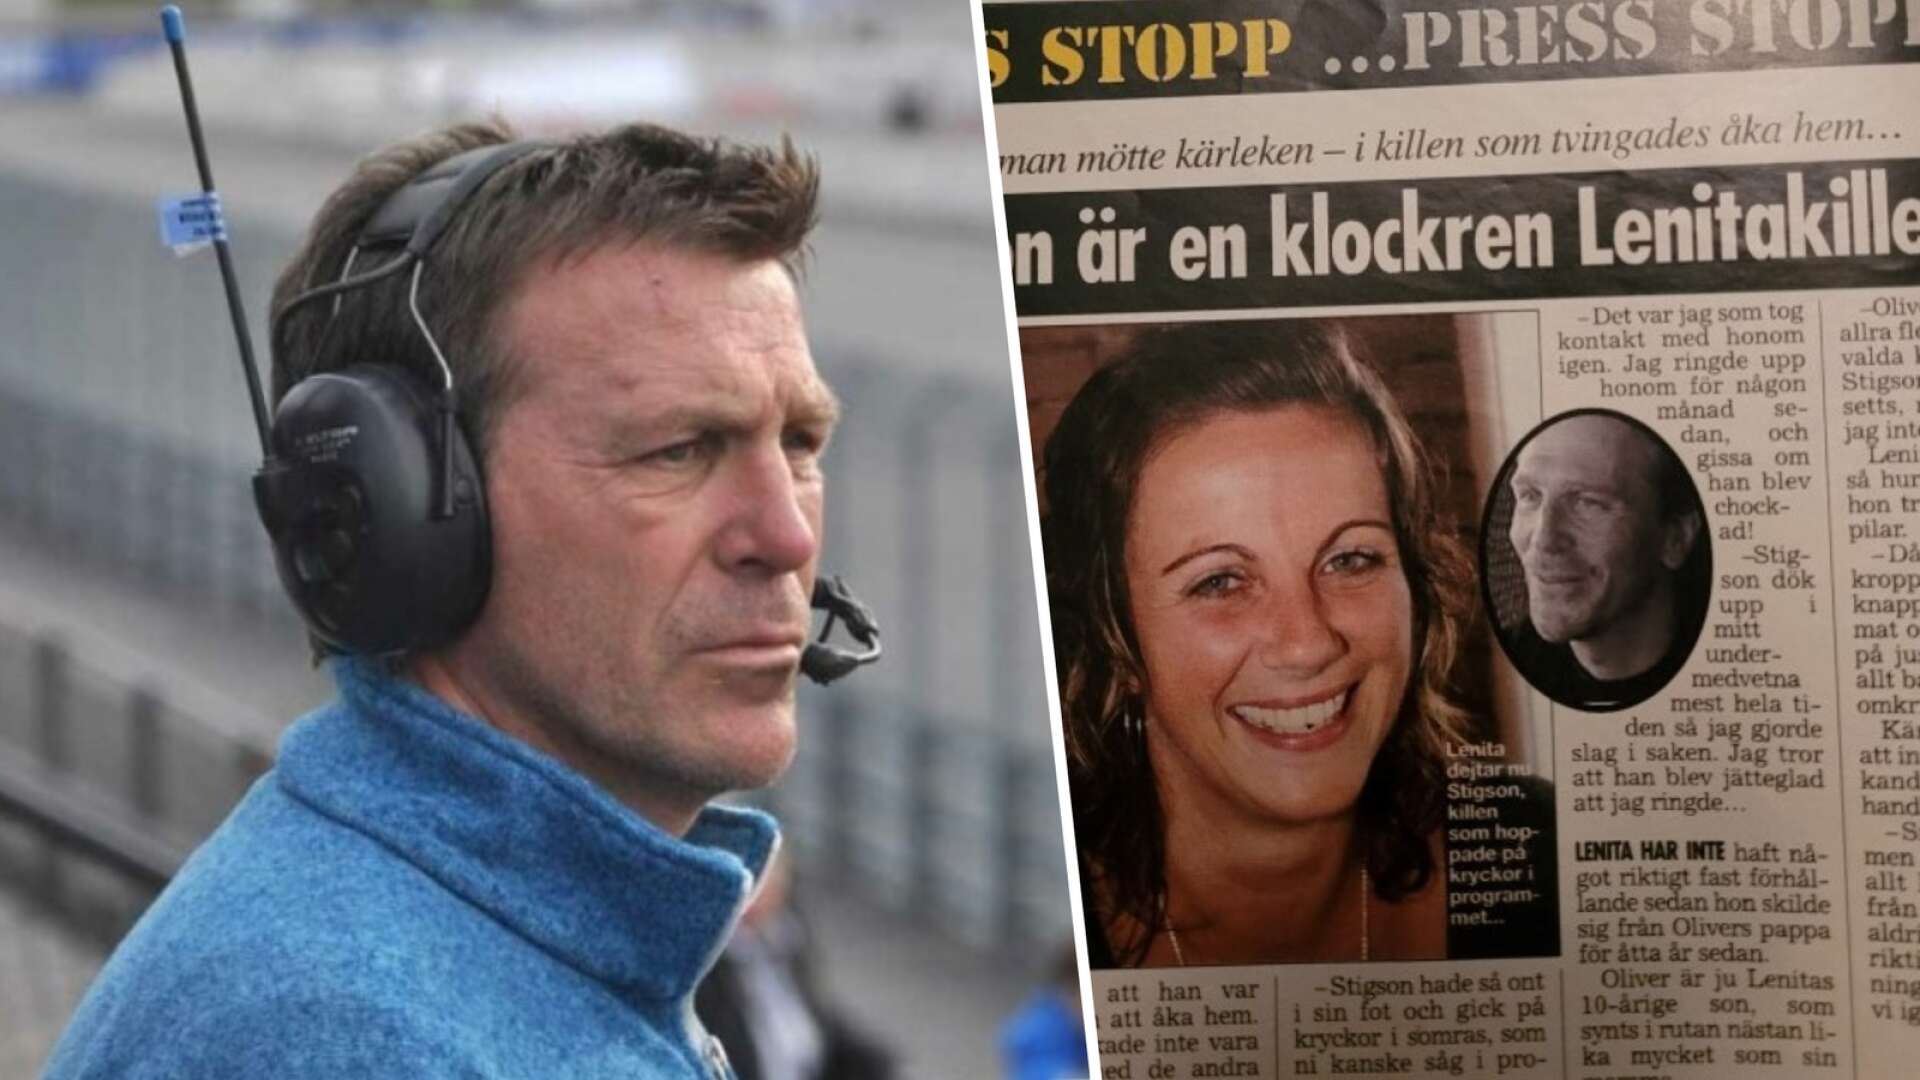 Del två i ”Kända från tv” • Anmäldes av kompisar • Festkvällen med Edström på Brolins krog • Upprörde TV3-cheferna: ”Skitsura”